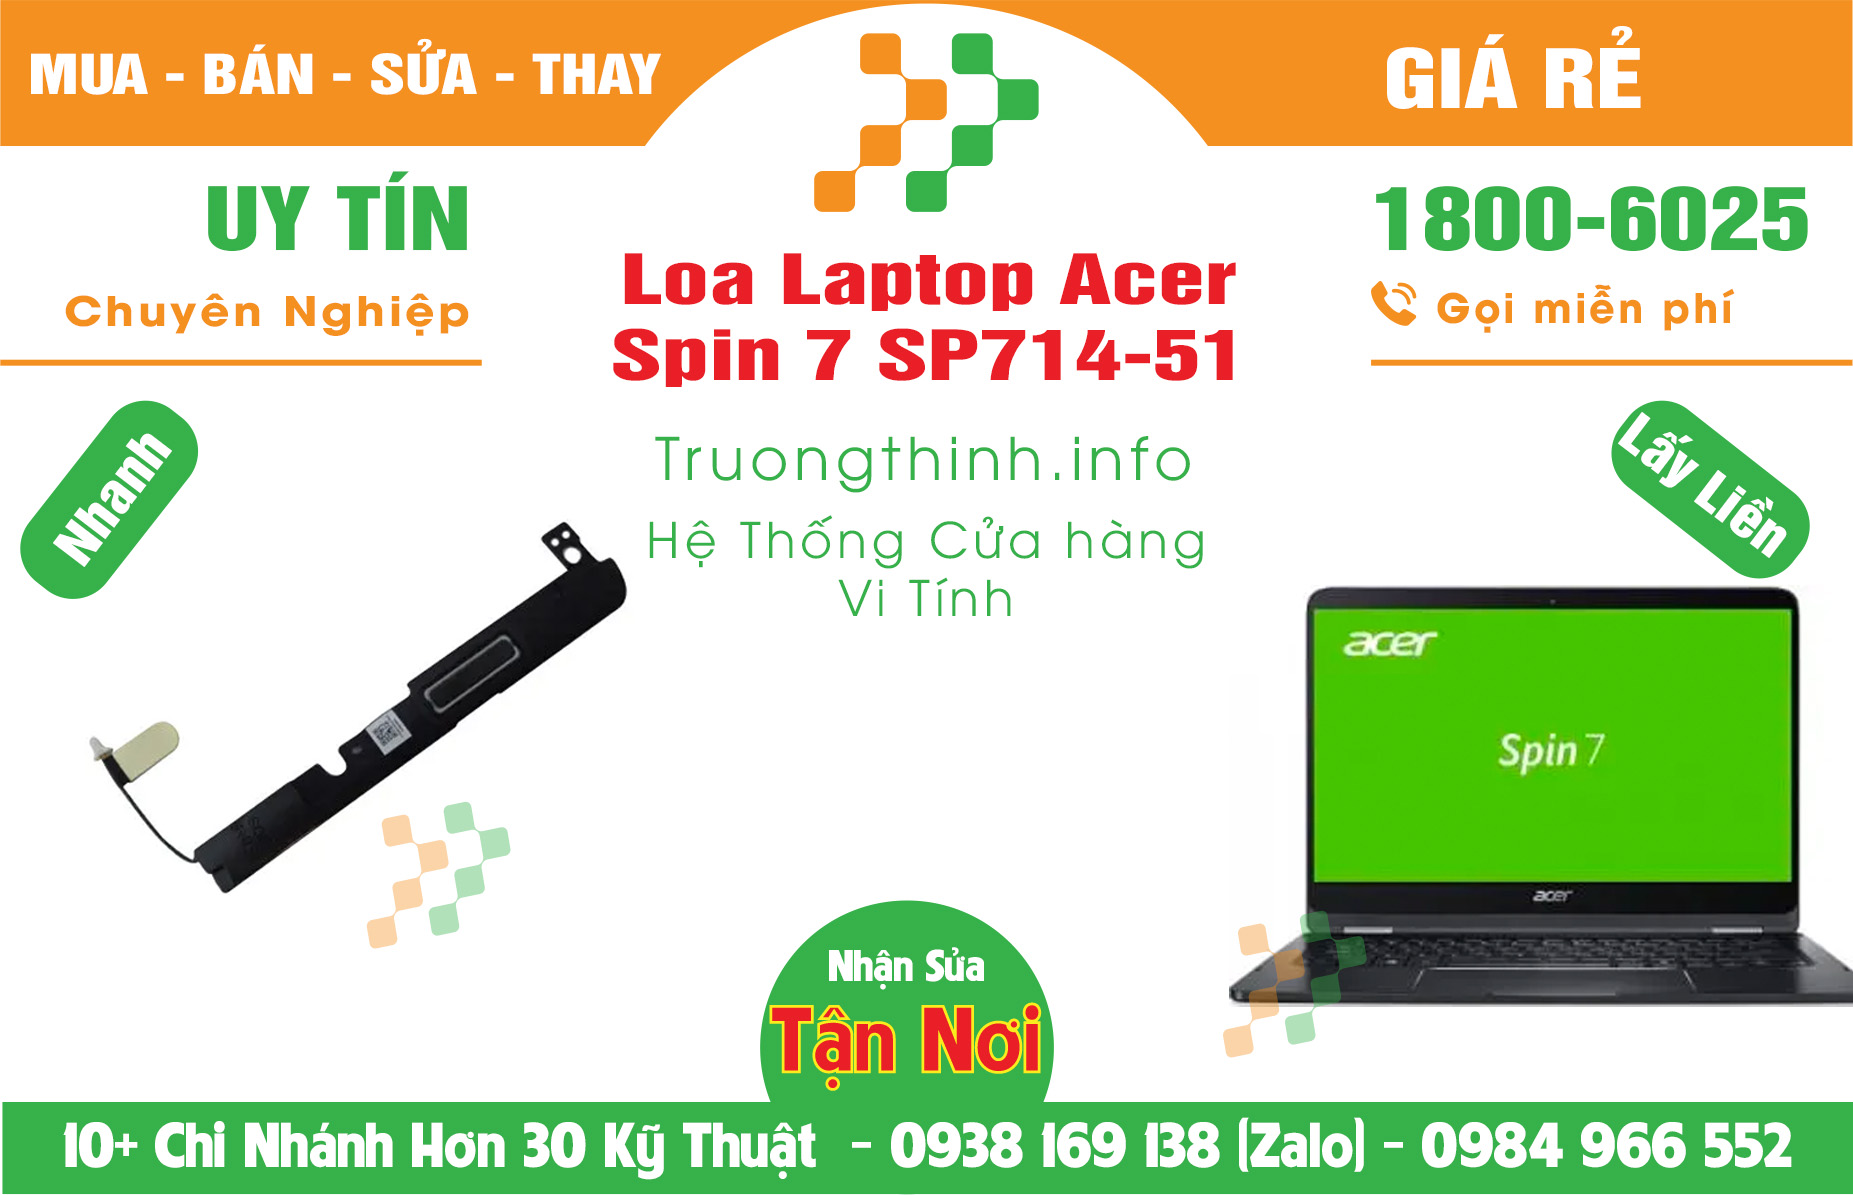 Mua Bán Loa Laptop Acer Spin 7 SP714-51 Giá Rẻ | Máy Tính Trường Thịnh Giá Rẻ